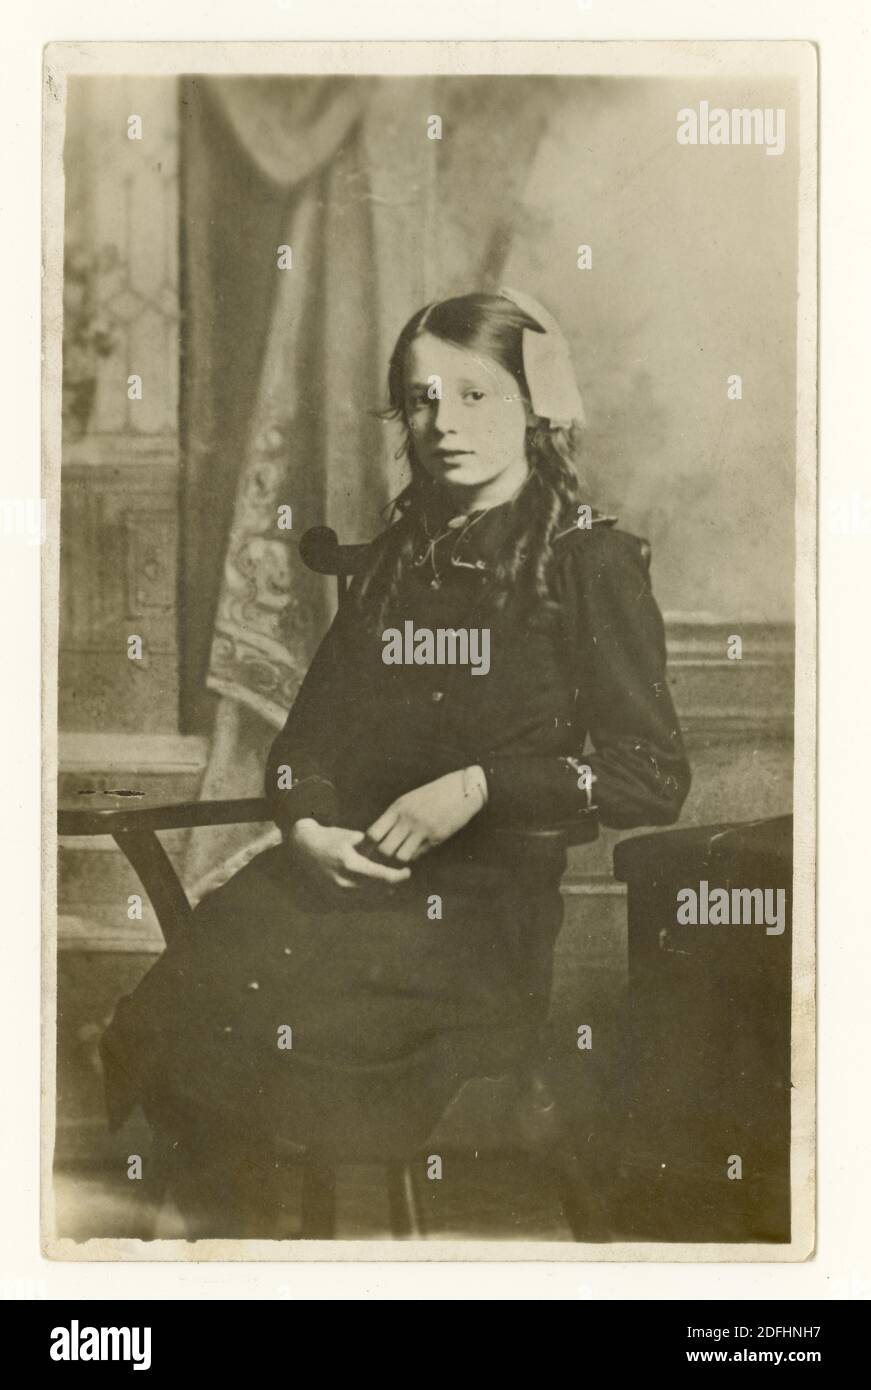 Carte postale commémorative originale du début des années 1900 de la première Guerre mondiale d'une fille décédée appelée Minnie, qui était des années d'adolescence quand elle est décédée, datée du 1916 janvier, Royaume-Uni Banque D'Images